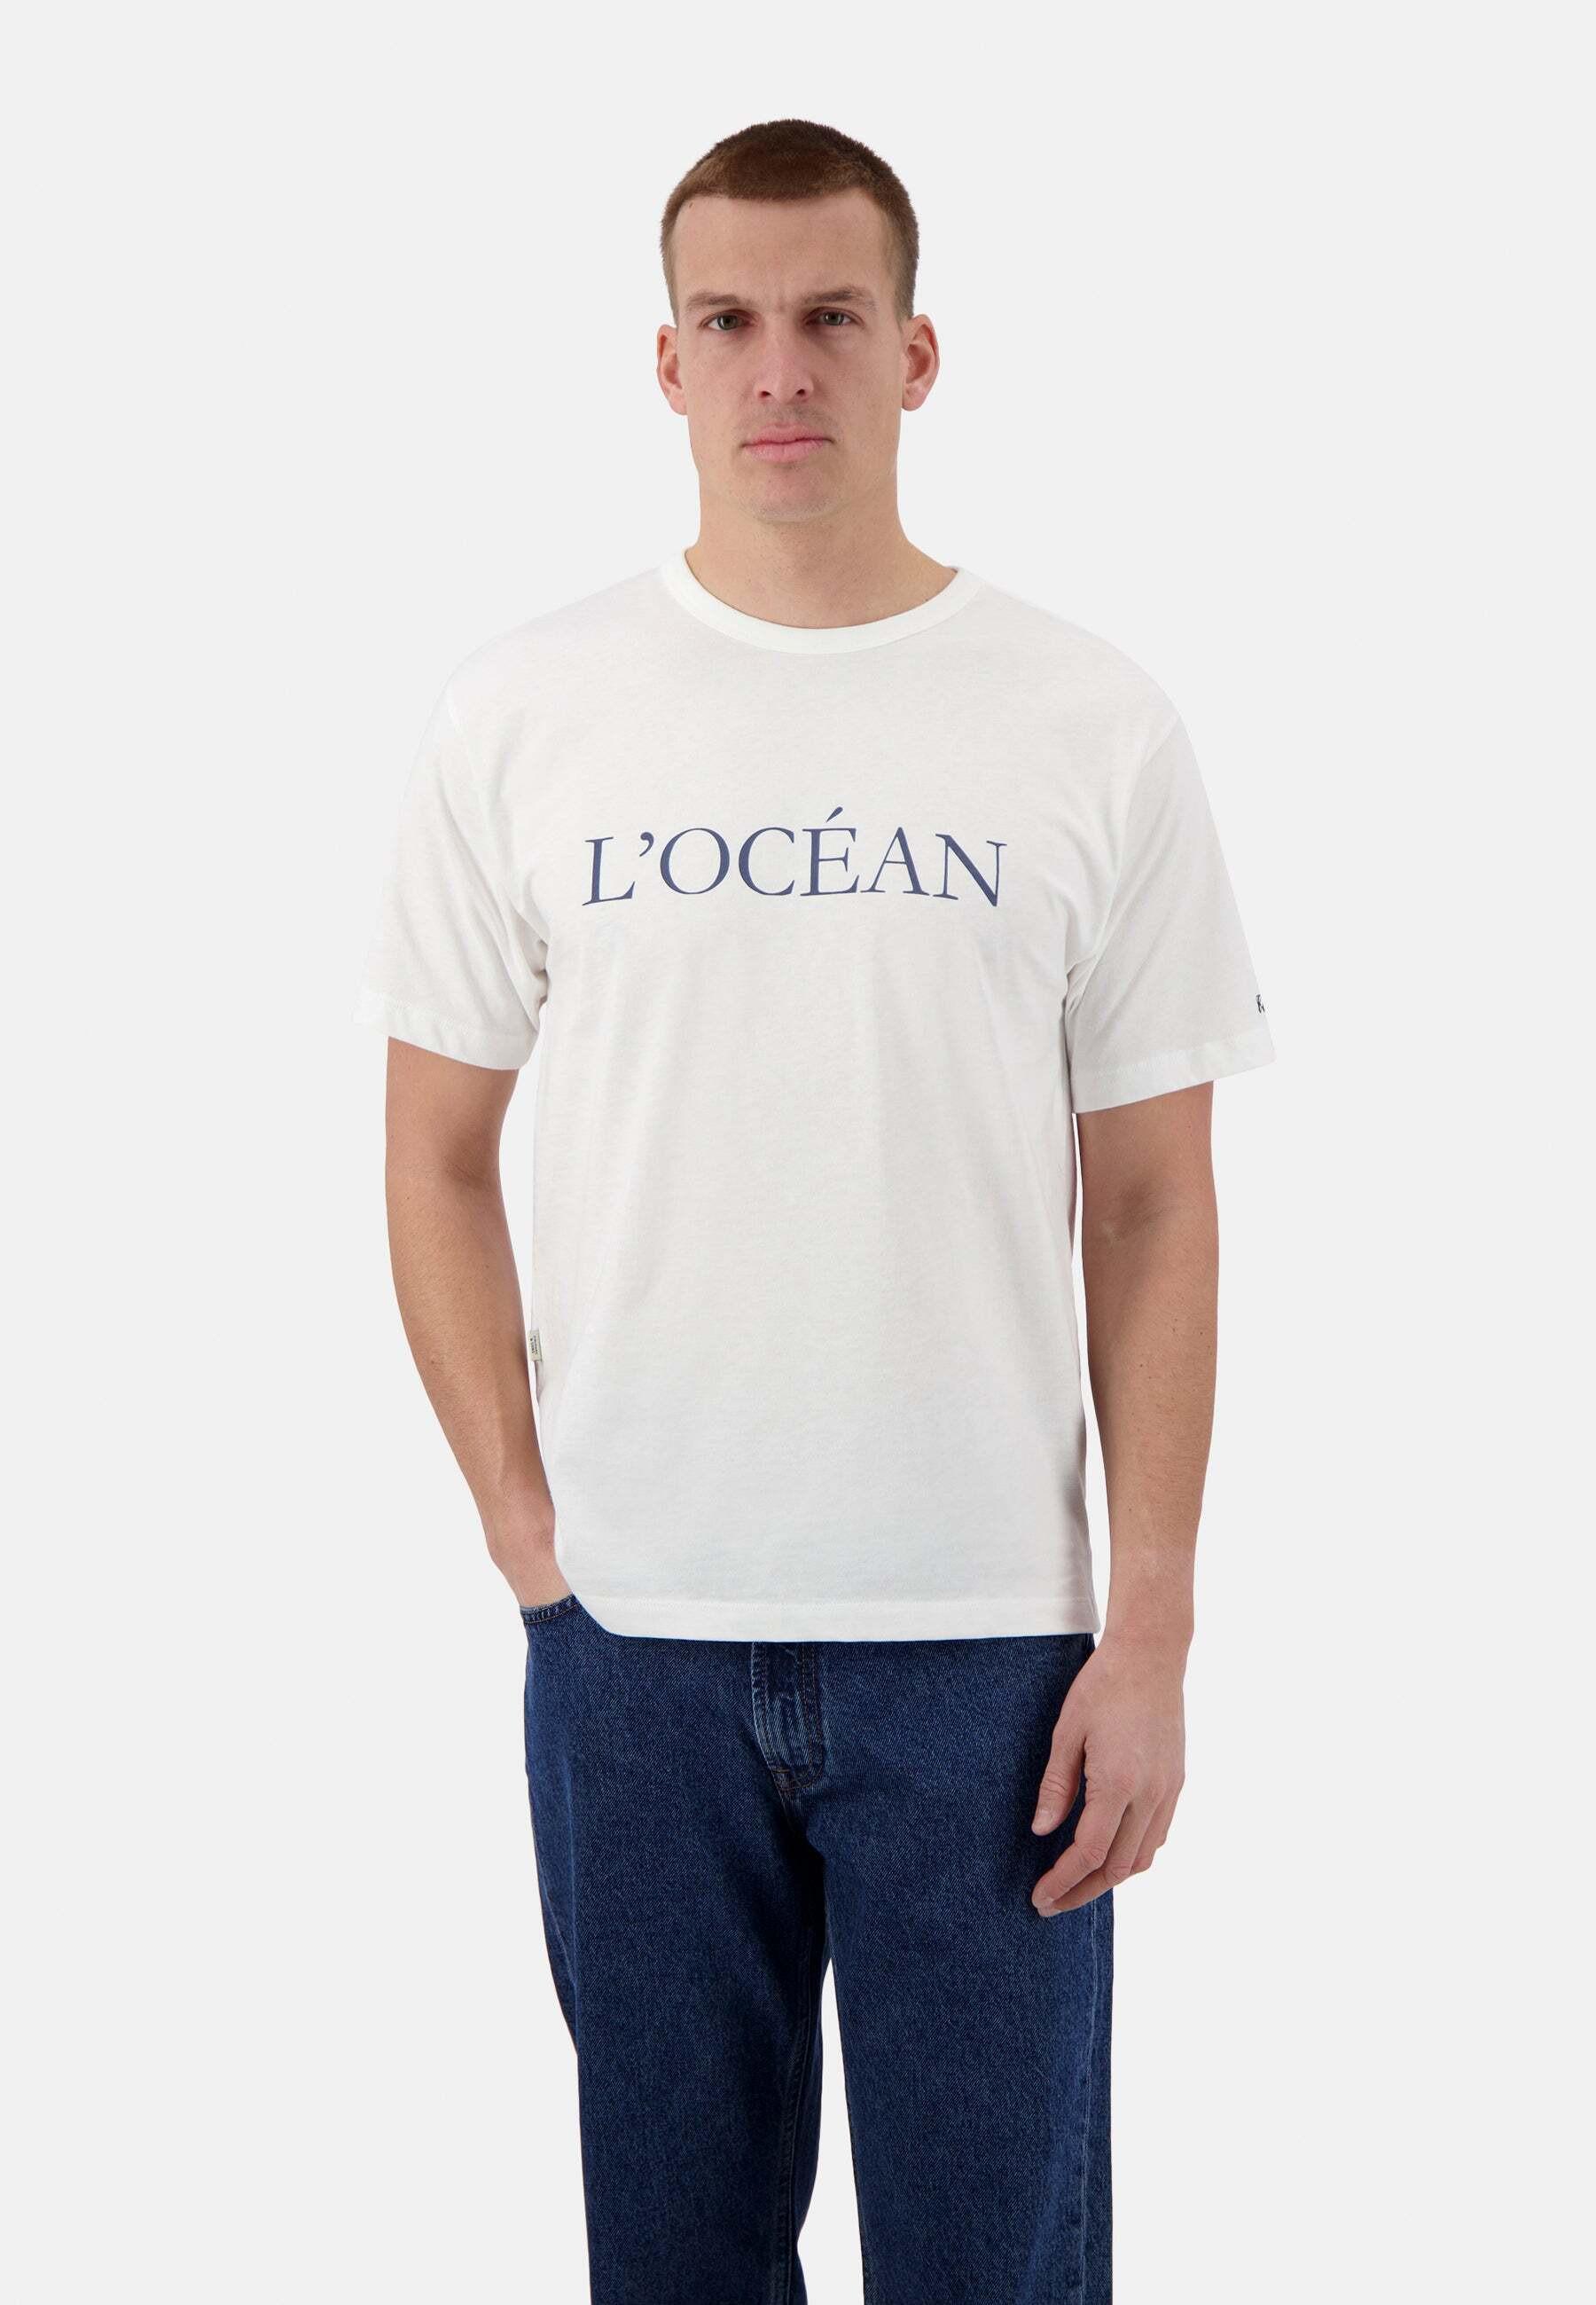 T-shirts L'ocean Herren Weiss S von Colours & Sons